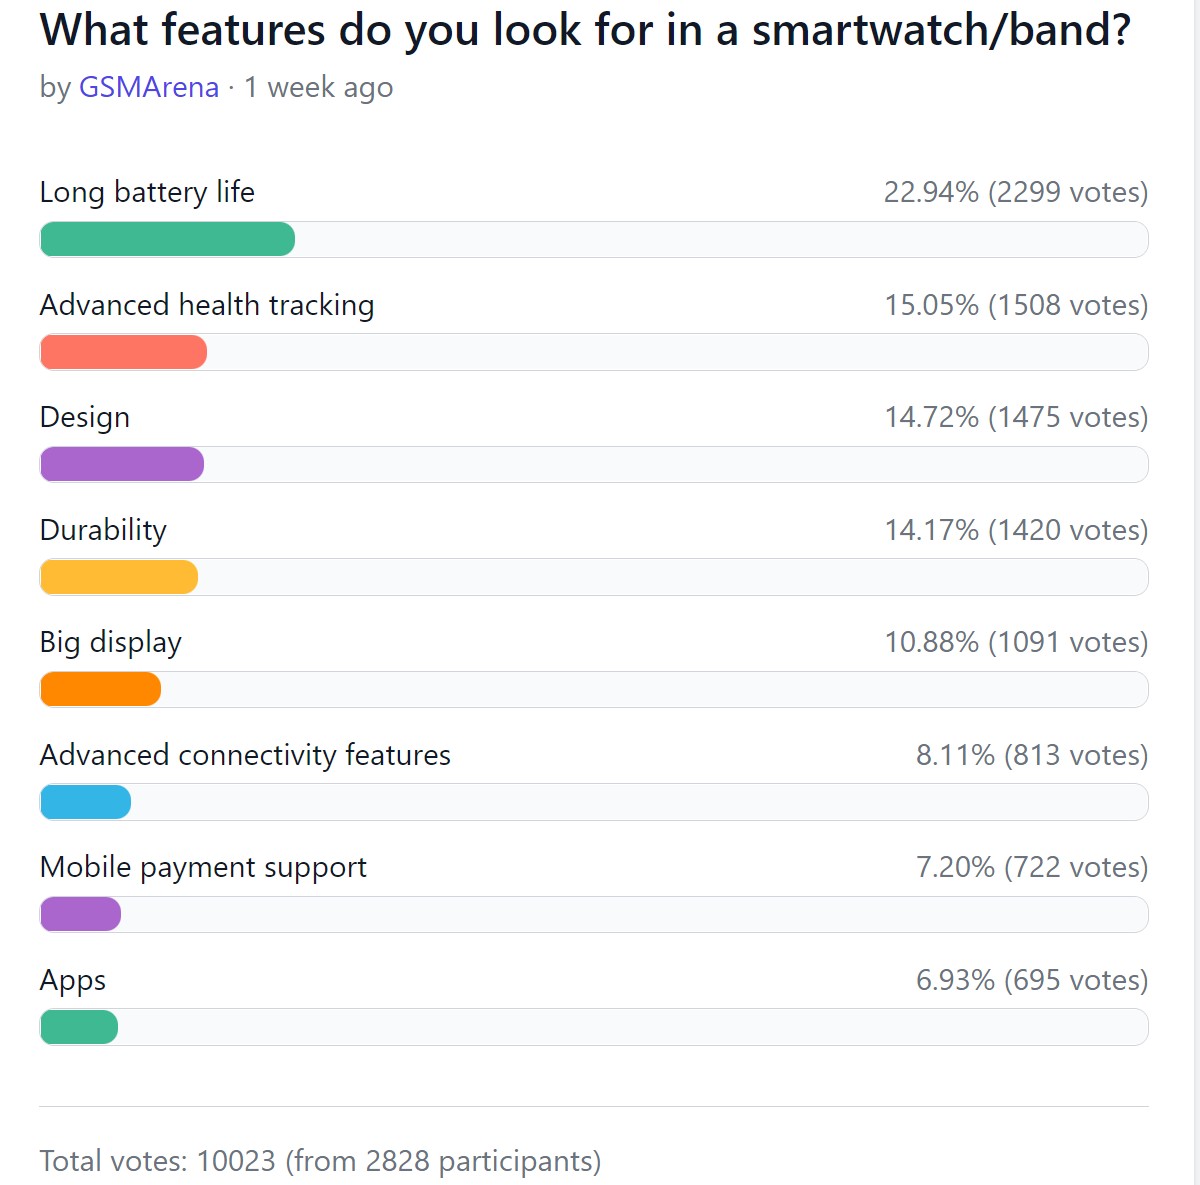 Resultados de la encuesta semanal: los relojes inteligentes son cada vez más populares, especialmente los avanzados